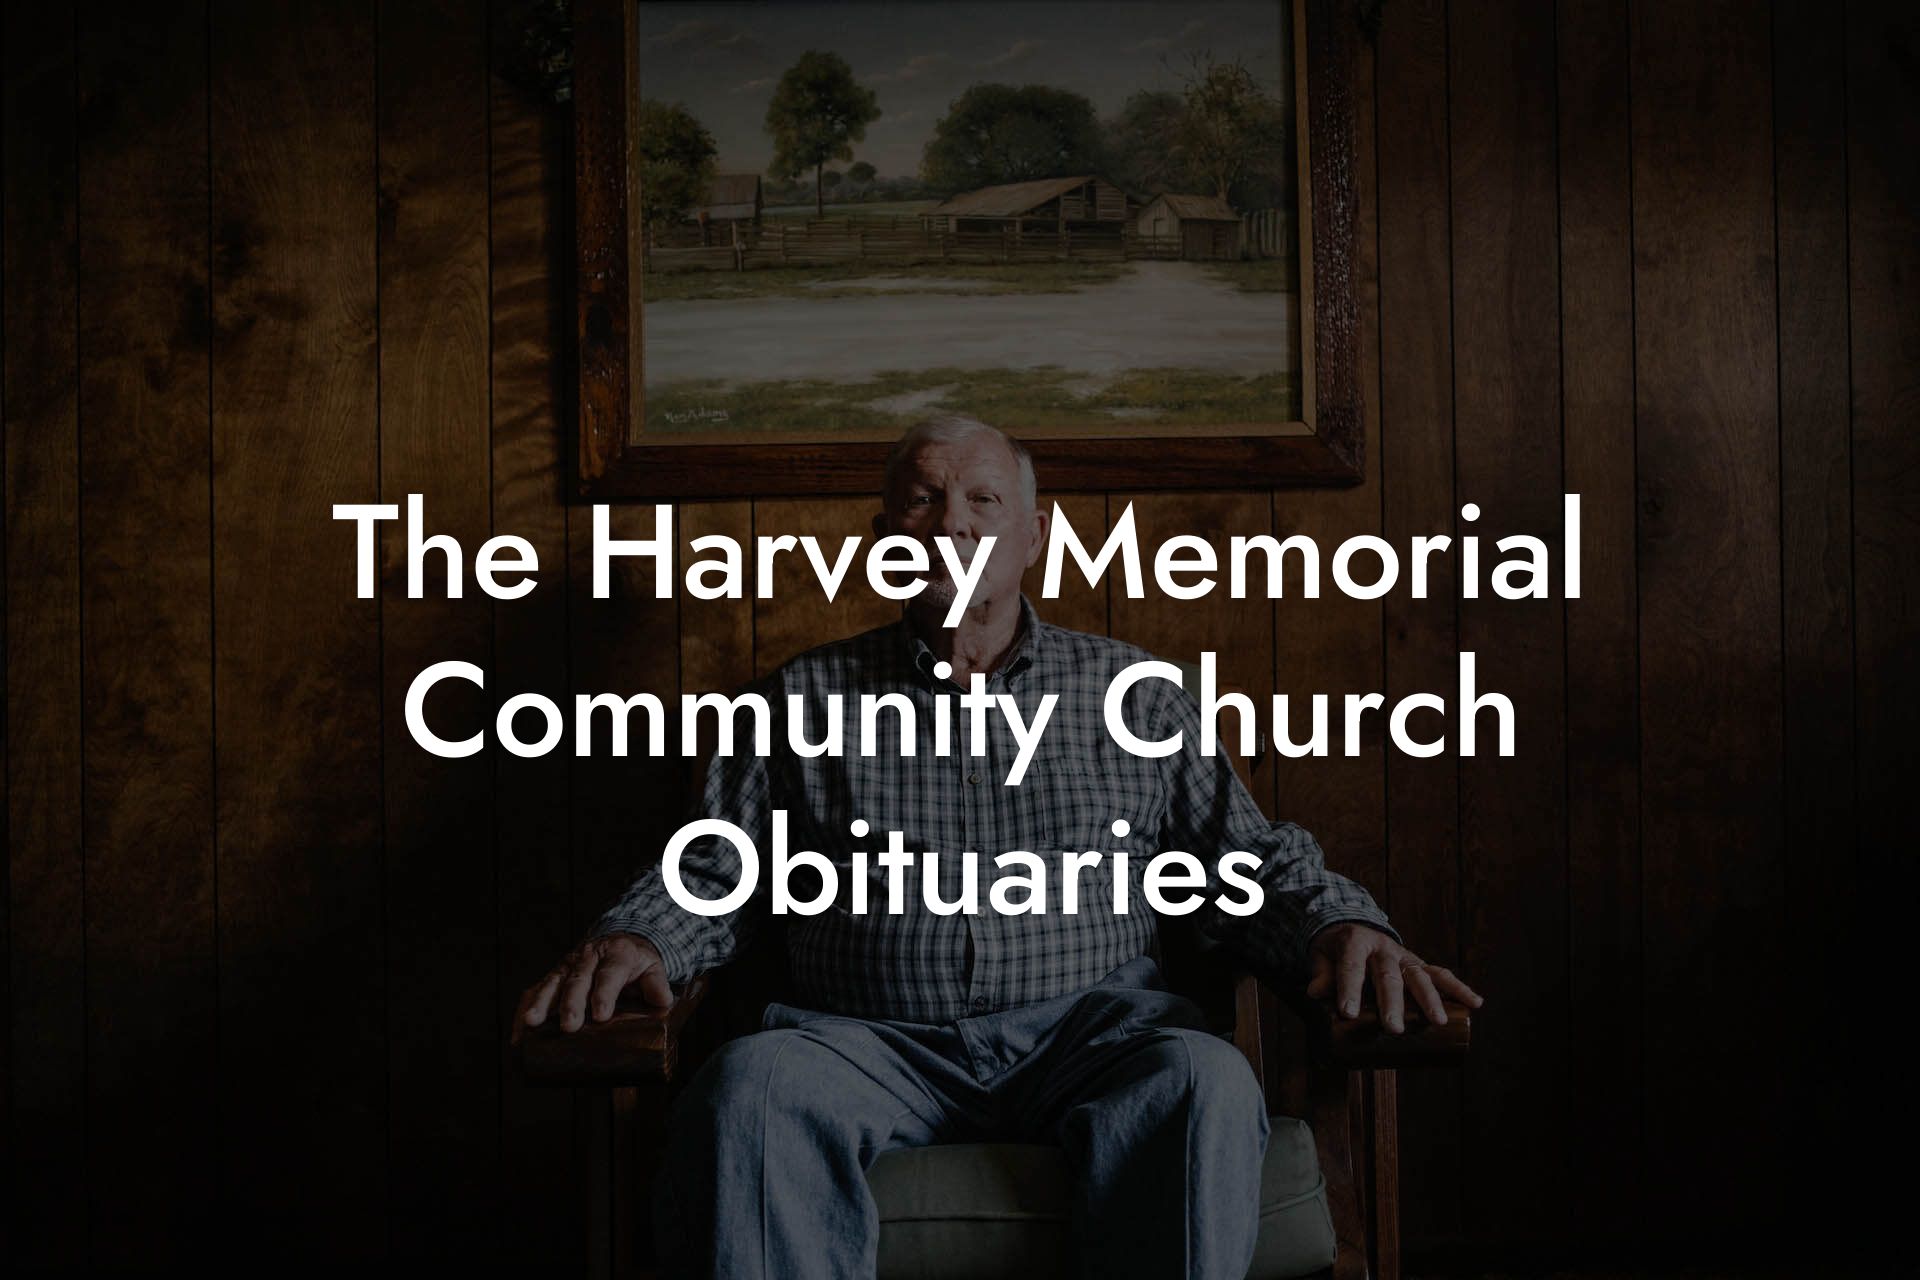 The Harvey Memorial Community Church Obituaries